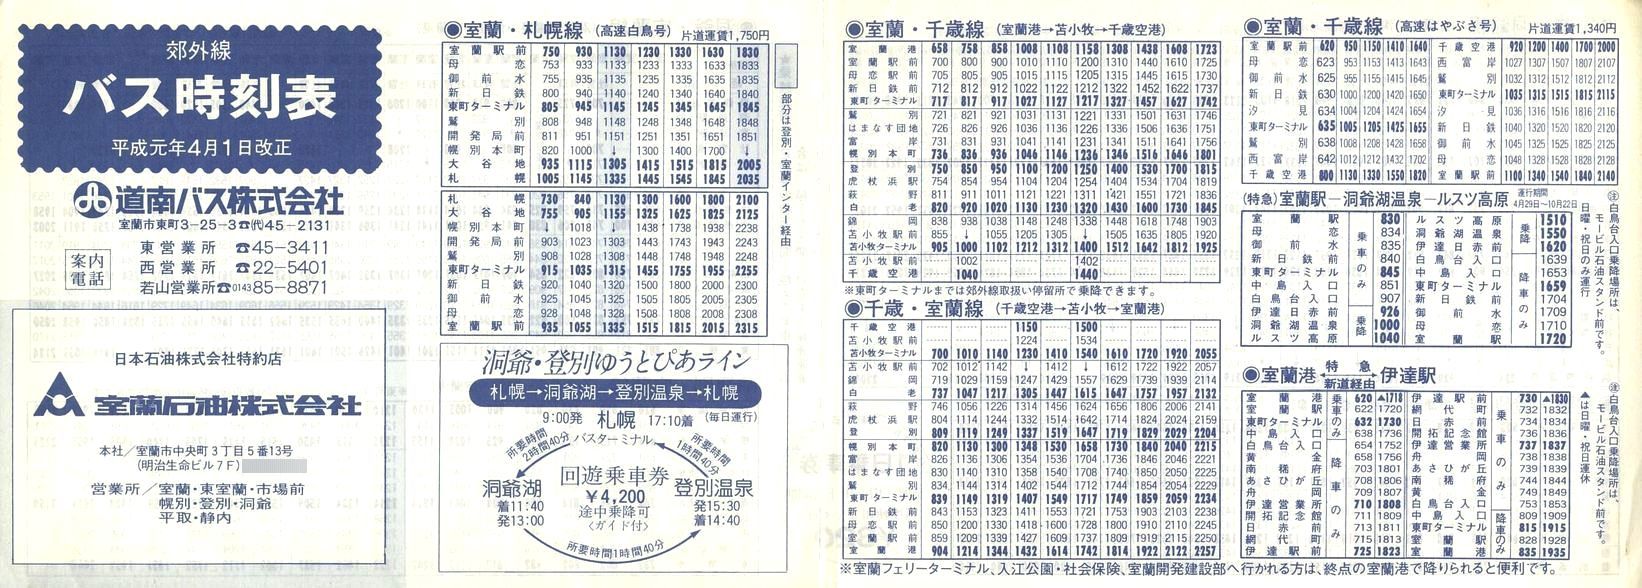 1989-04-01_oX_ōxO\\